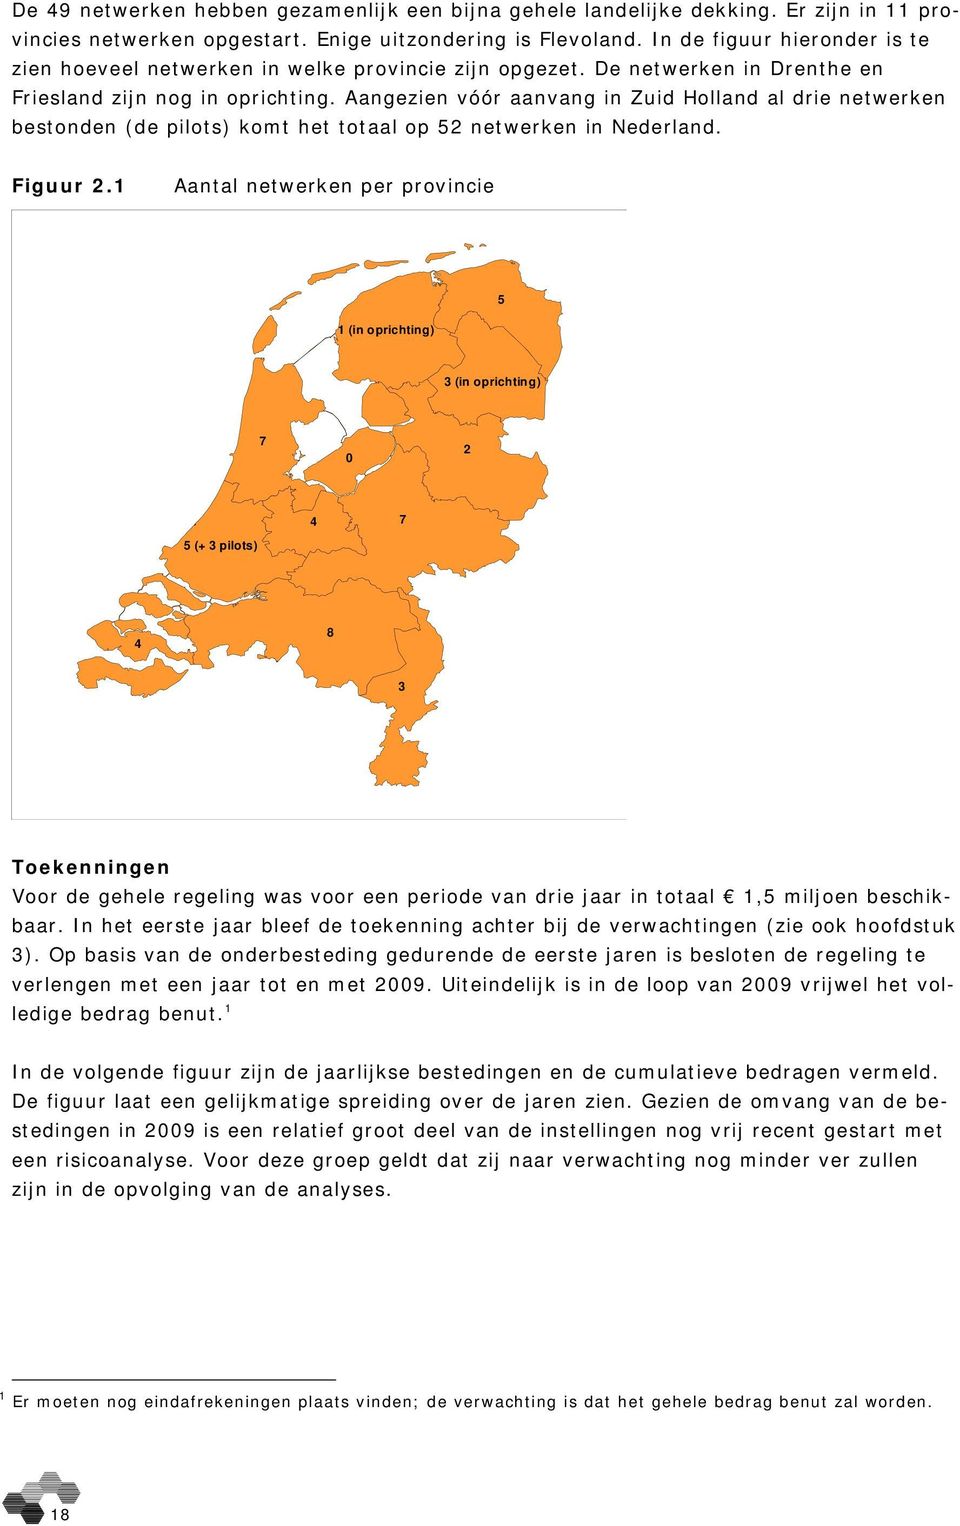 Aangezien vóór aanvang in Zuid Holland al drie netwerken bestonden (de pilots) komt het totaal op 52 netwerken in Nederland. Figuur 2.